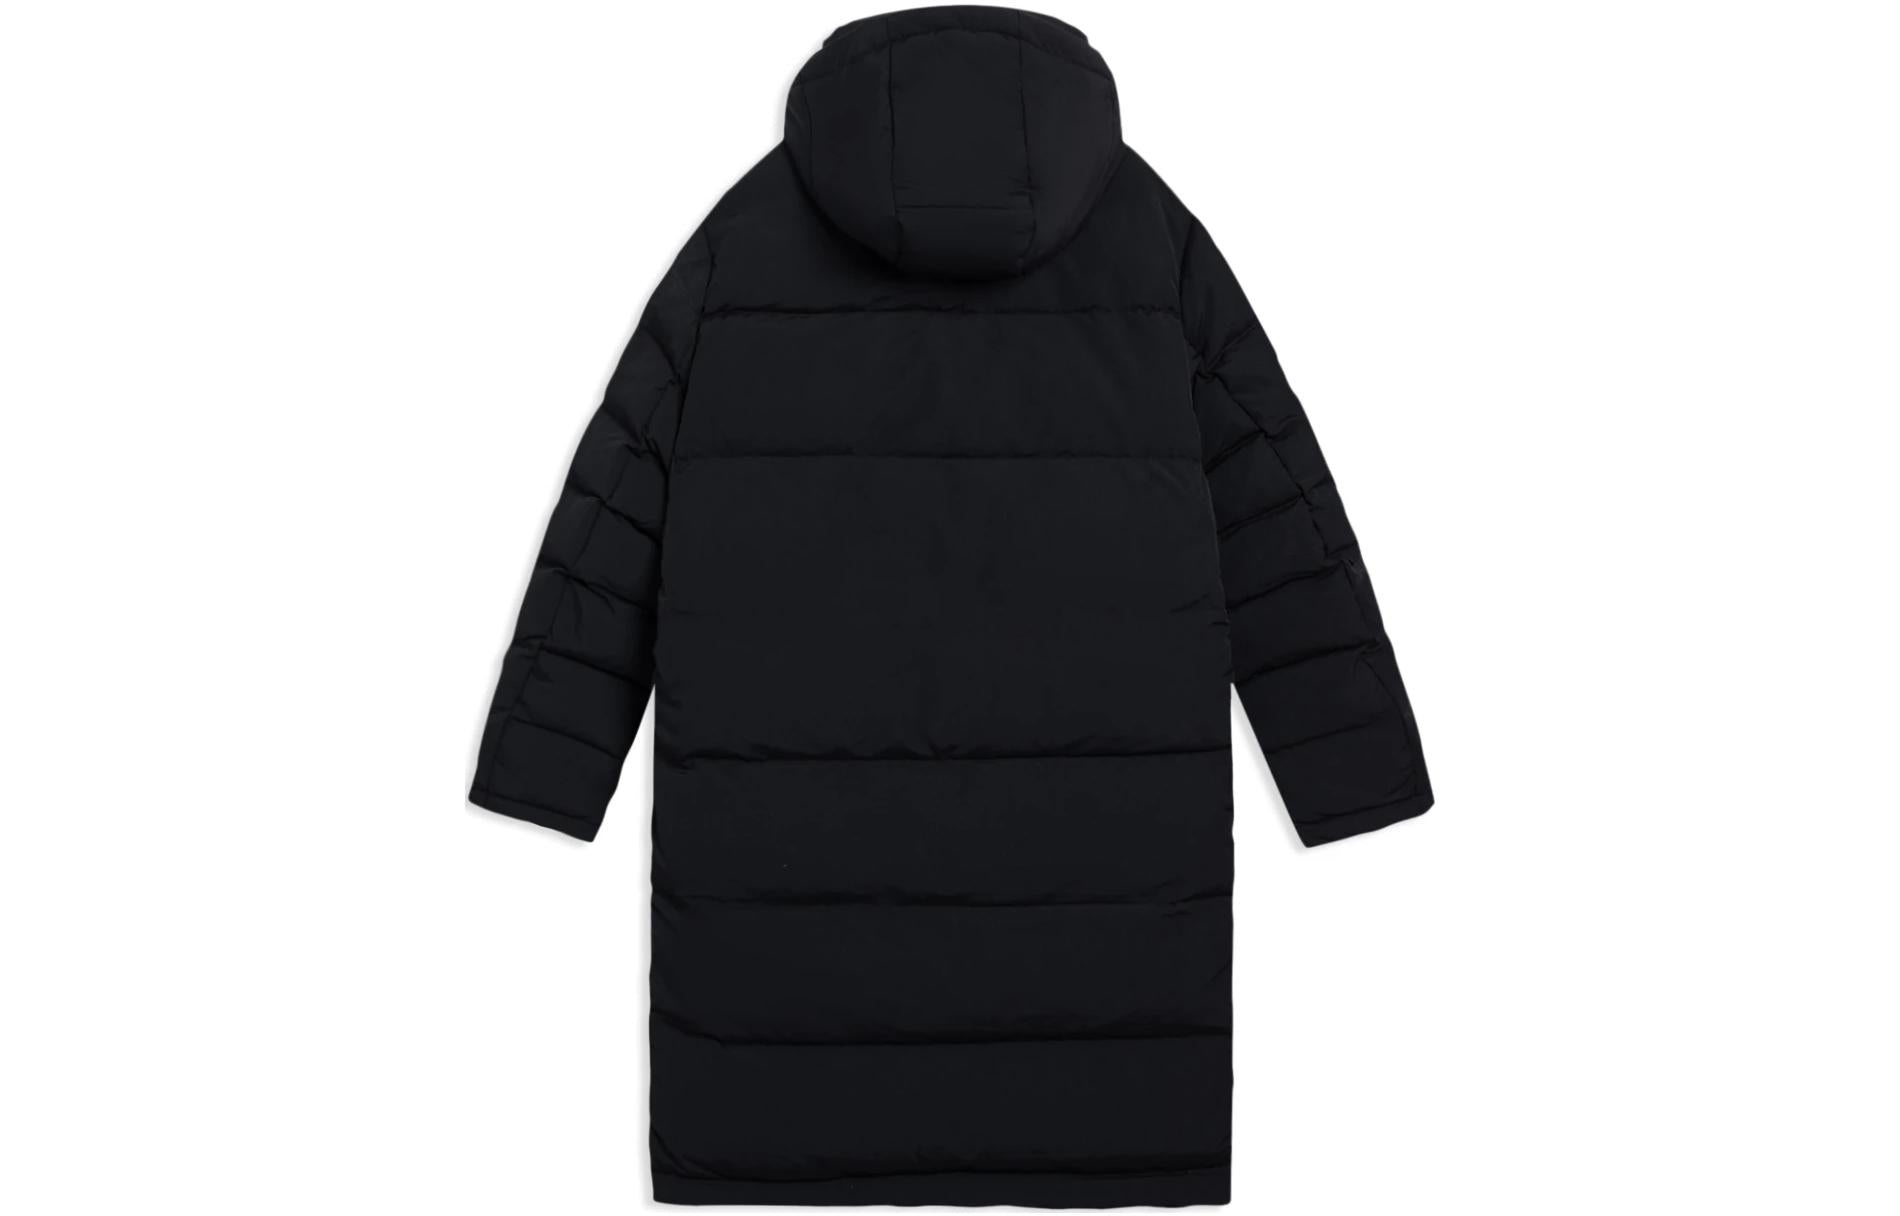 Li-Ning Winter Lifestyle Long Down Jacket 'Black' AYMS065-2 - 2